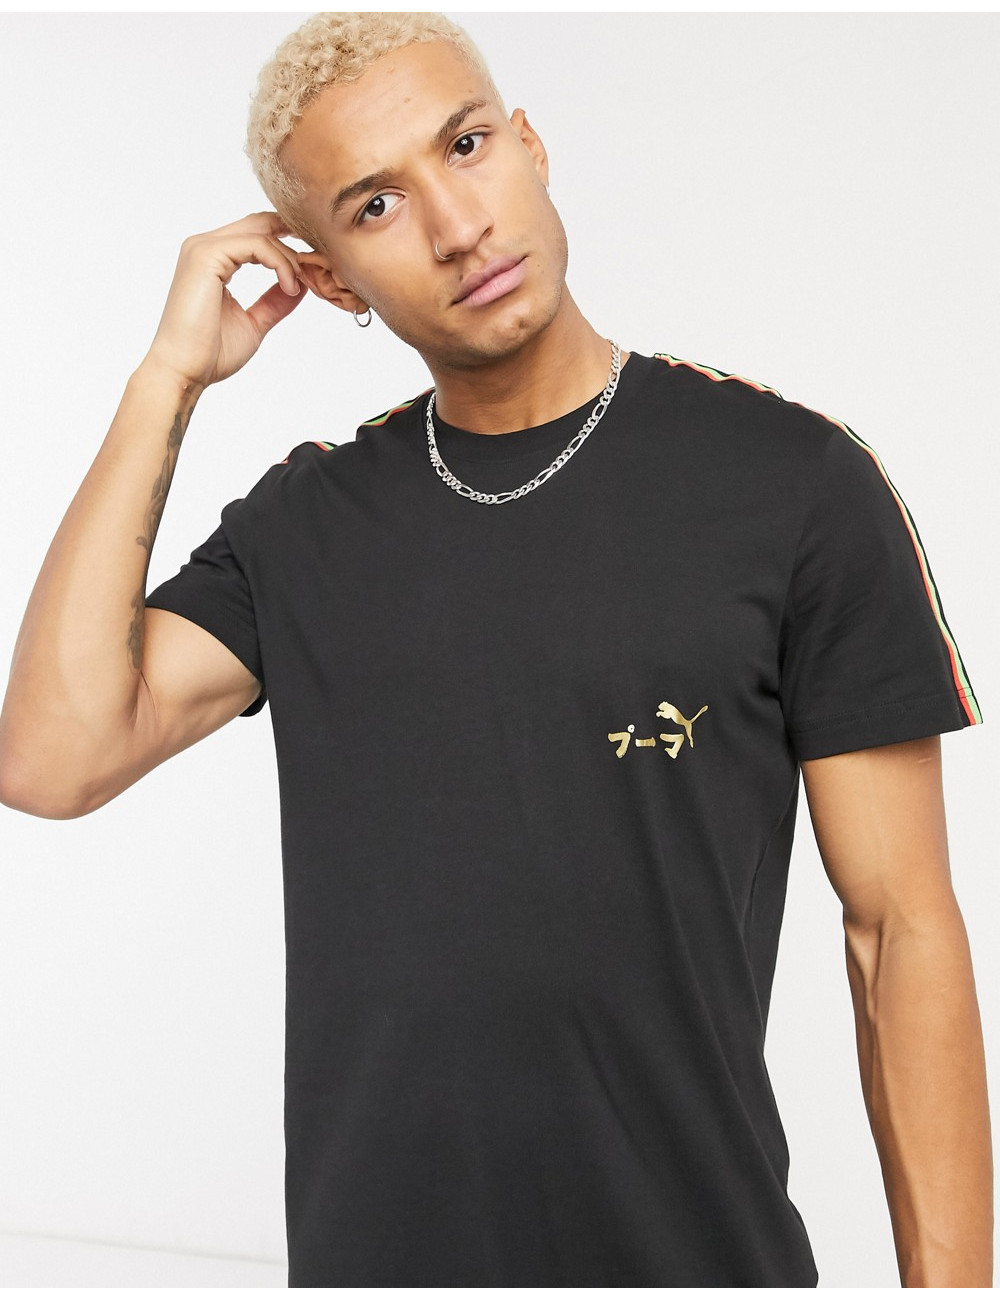 Puma Unity t-shirt in black